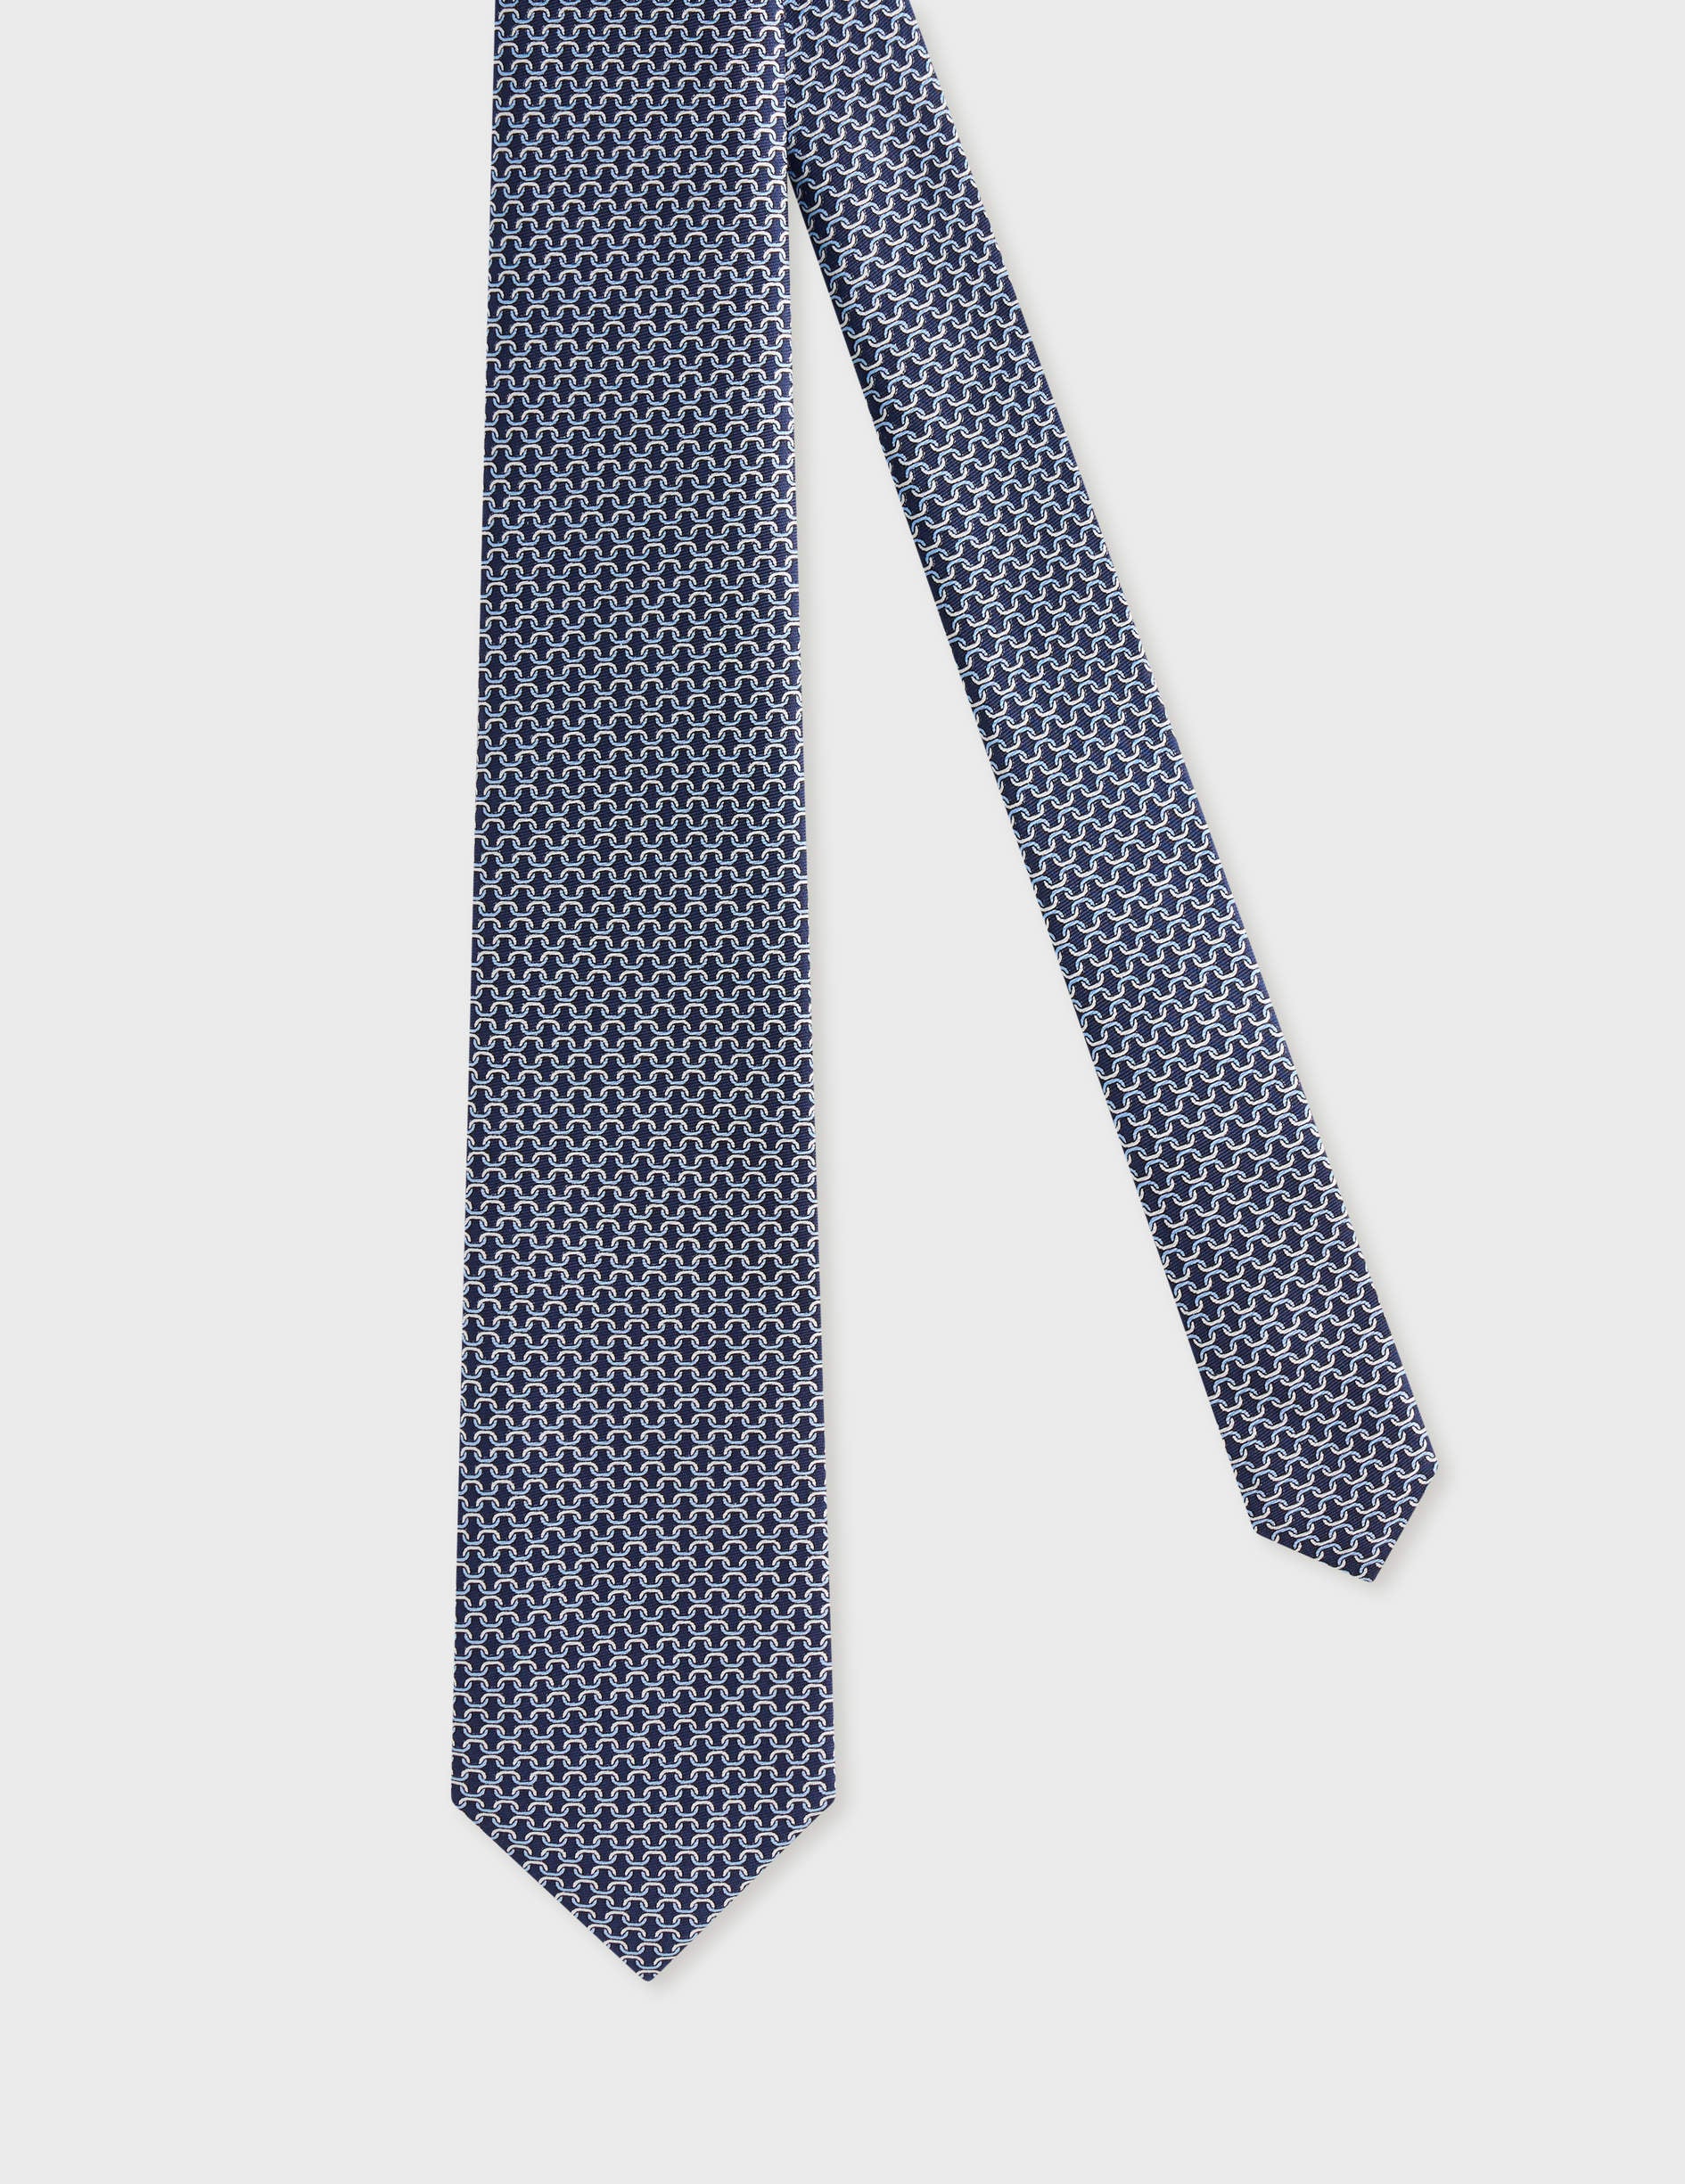 Cravate fine en soie bleue à motifs